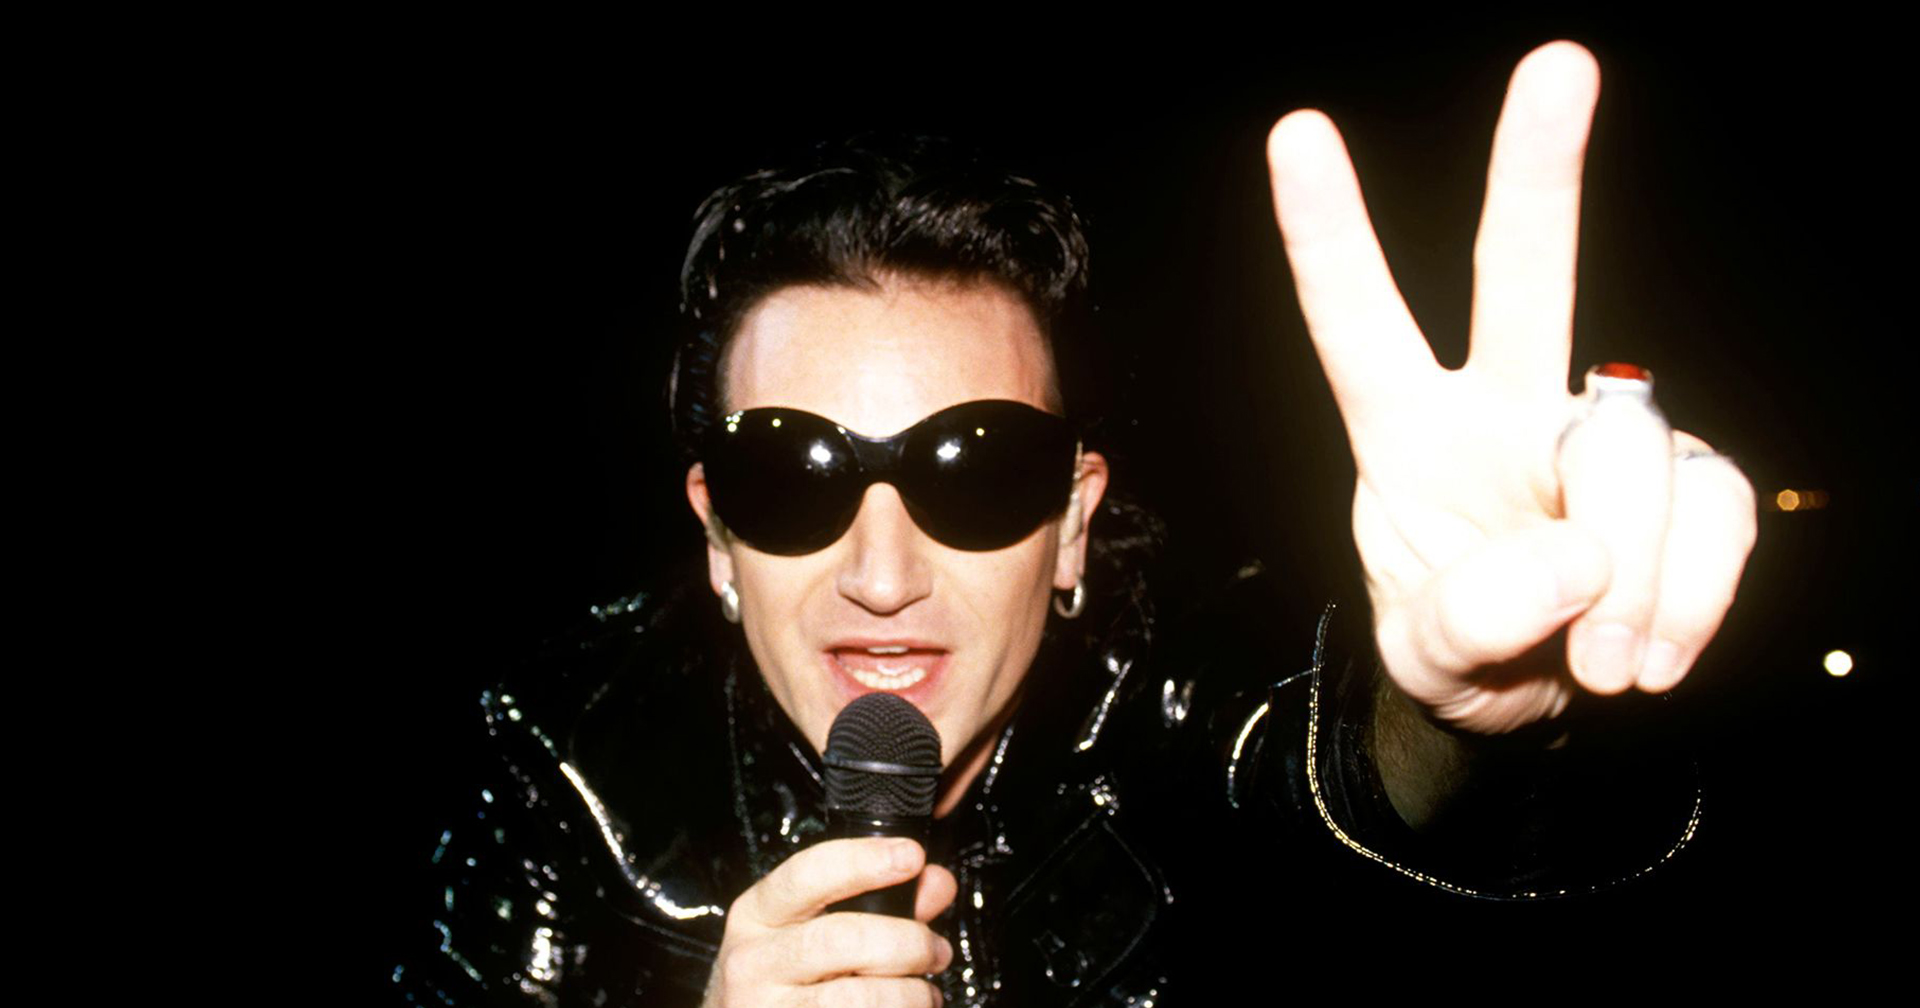 เรื่องราวของ Bono นักร้องนำแห่งวง U2 กับ ‘โรค’ ที่ทำให้ต้องใส่ ‘แว่นกันแดด’ ตลอดเวลา